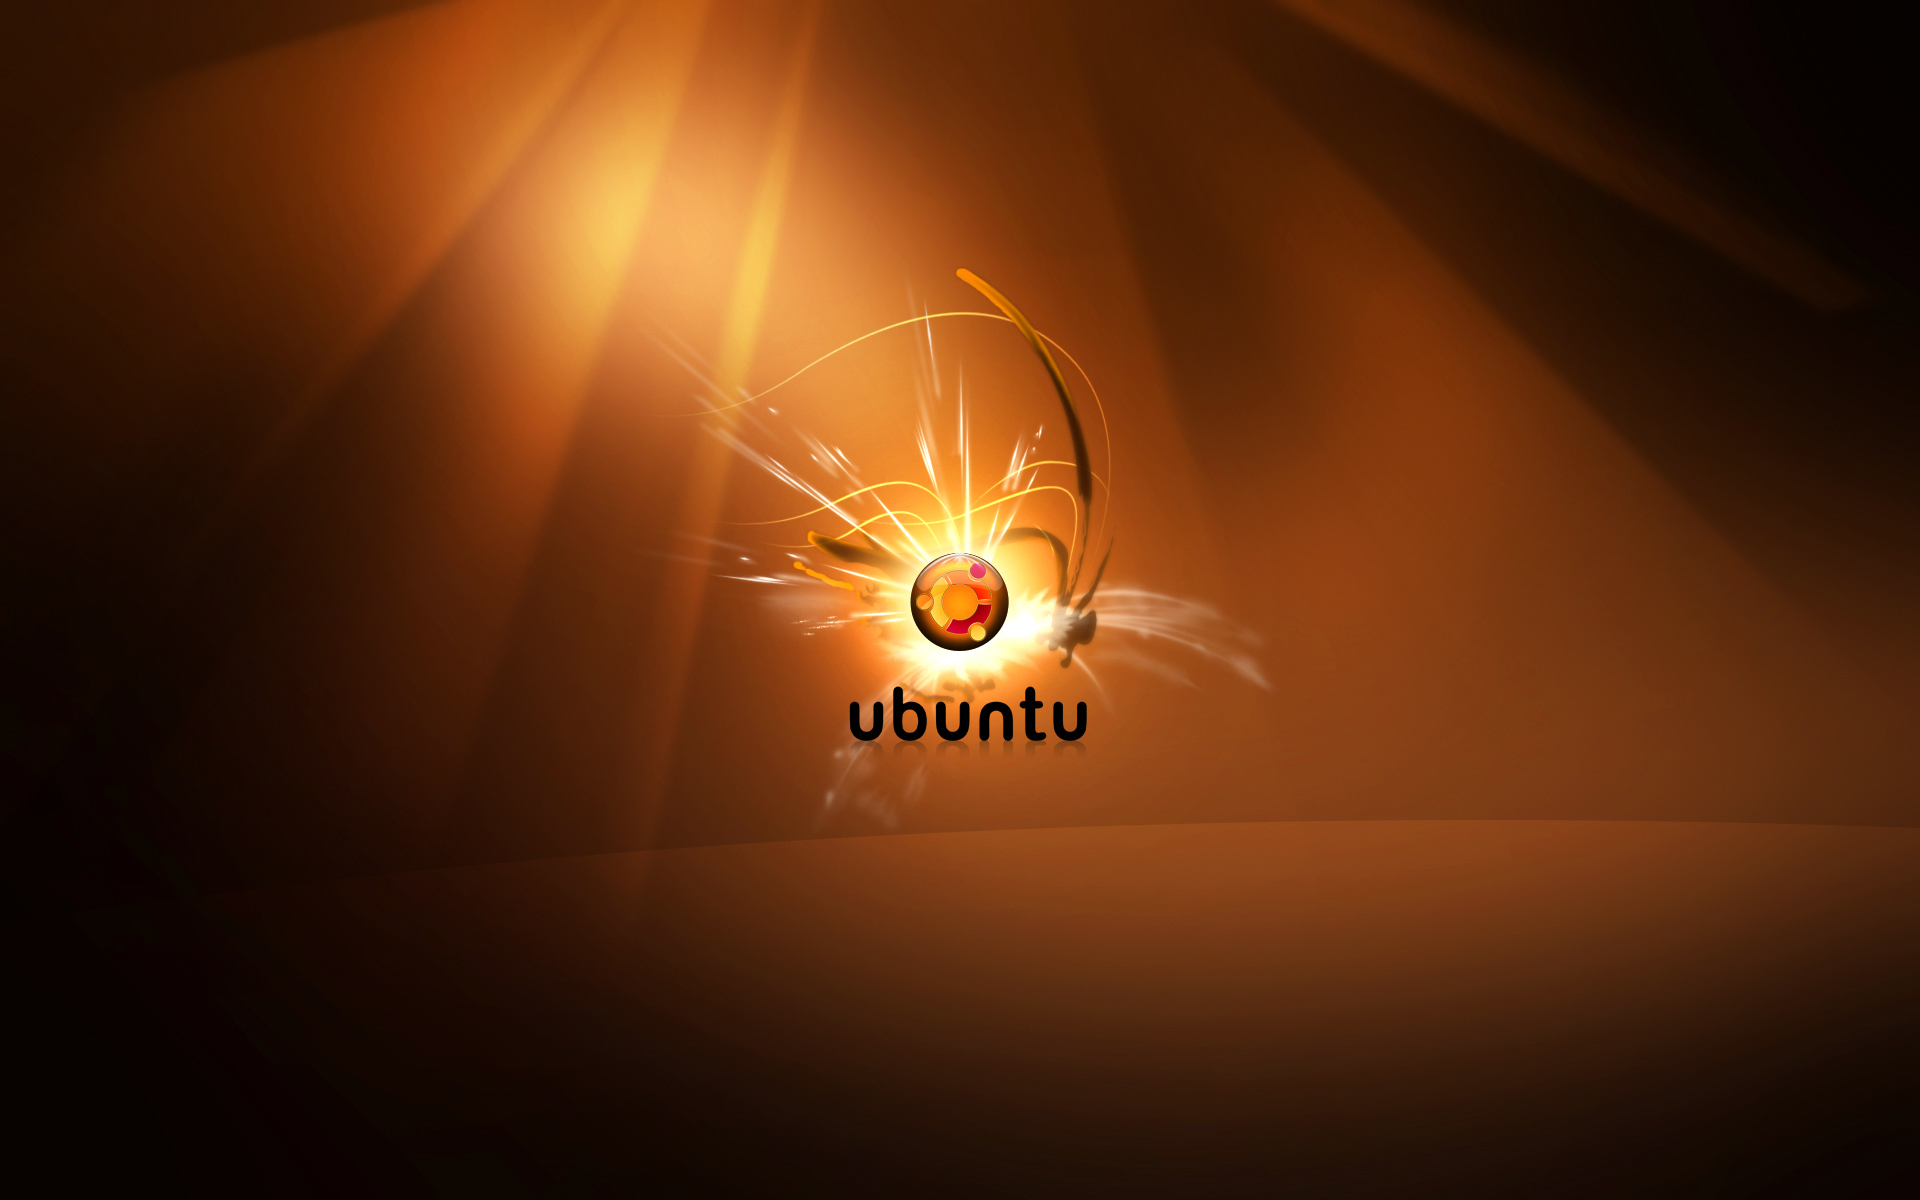 super ubuntu wallpapers hd